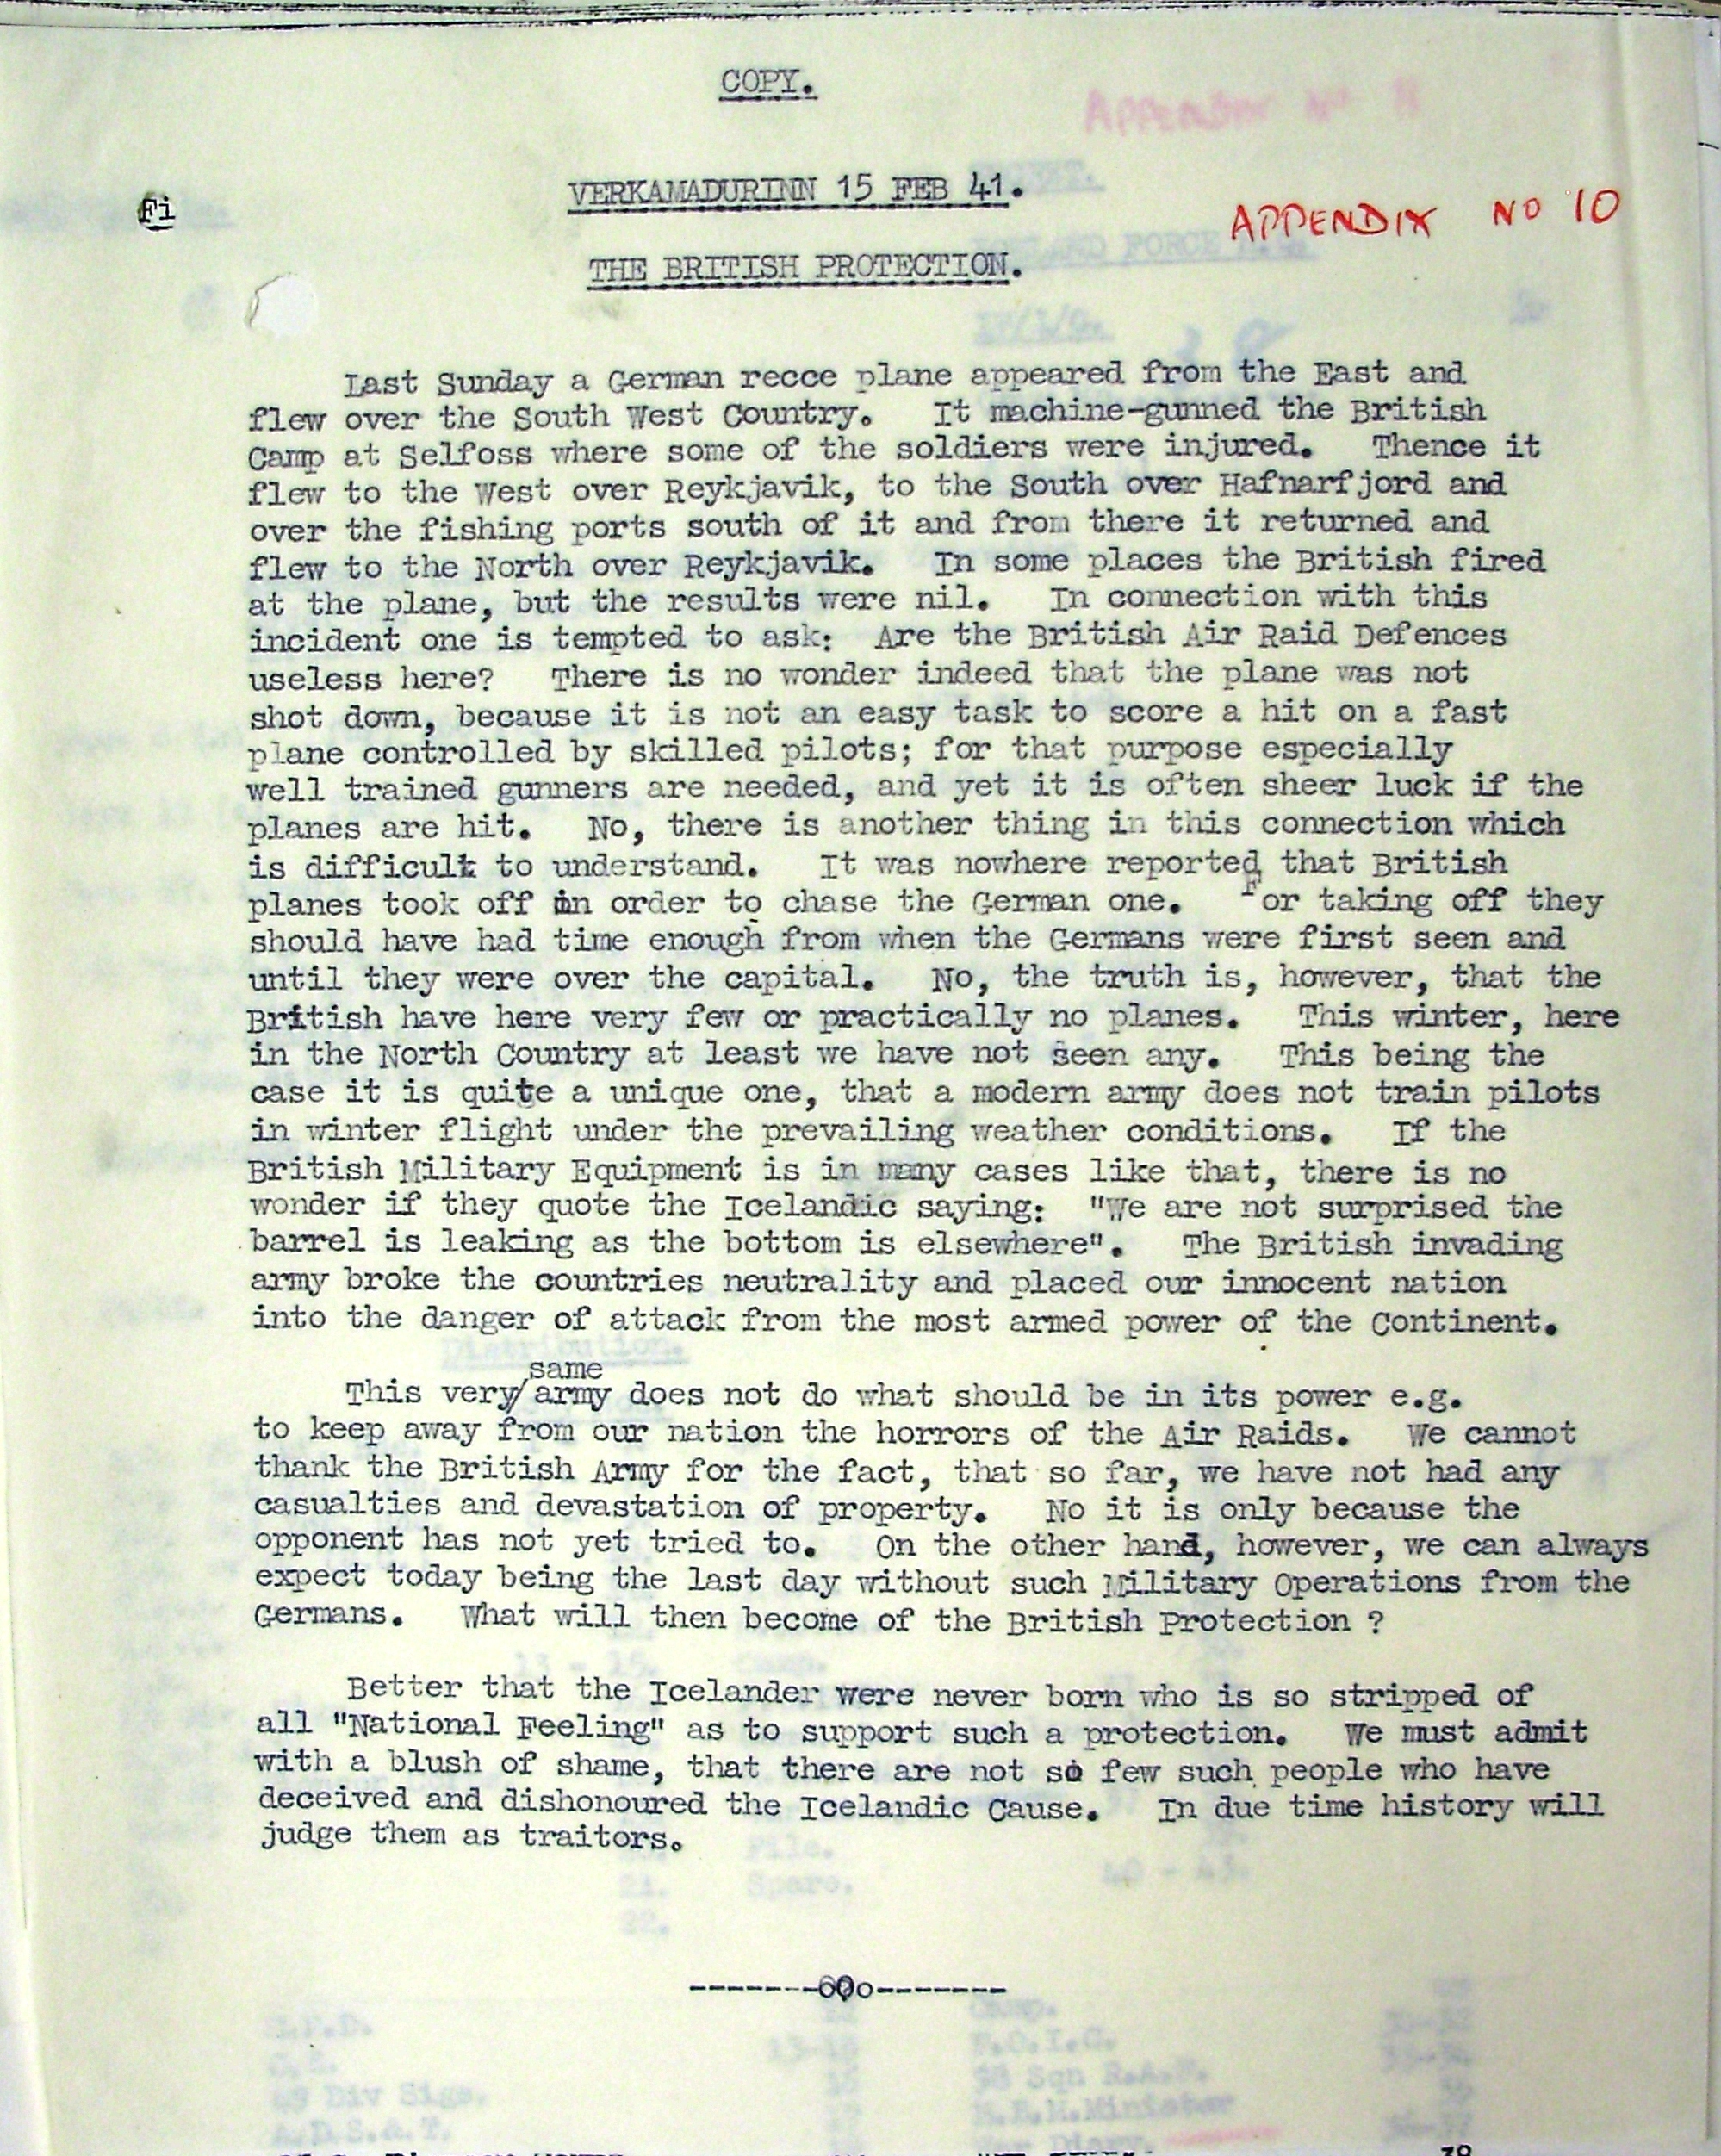 G Branch Mar 1941 App 10 Page 1.JPG